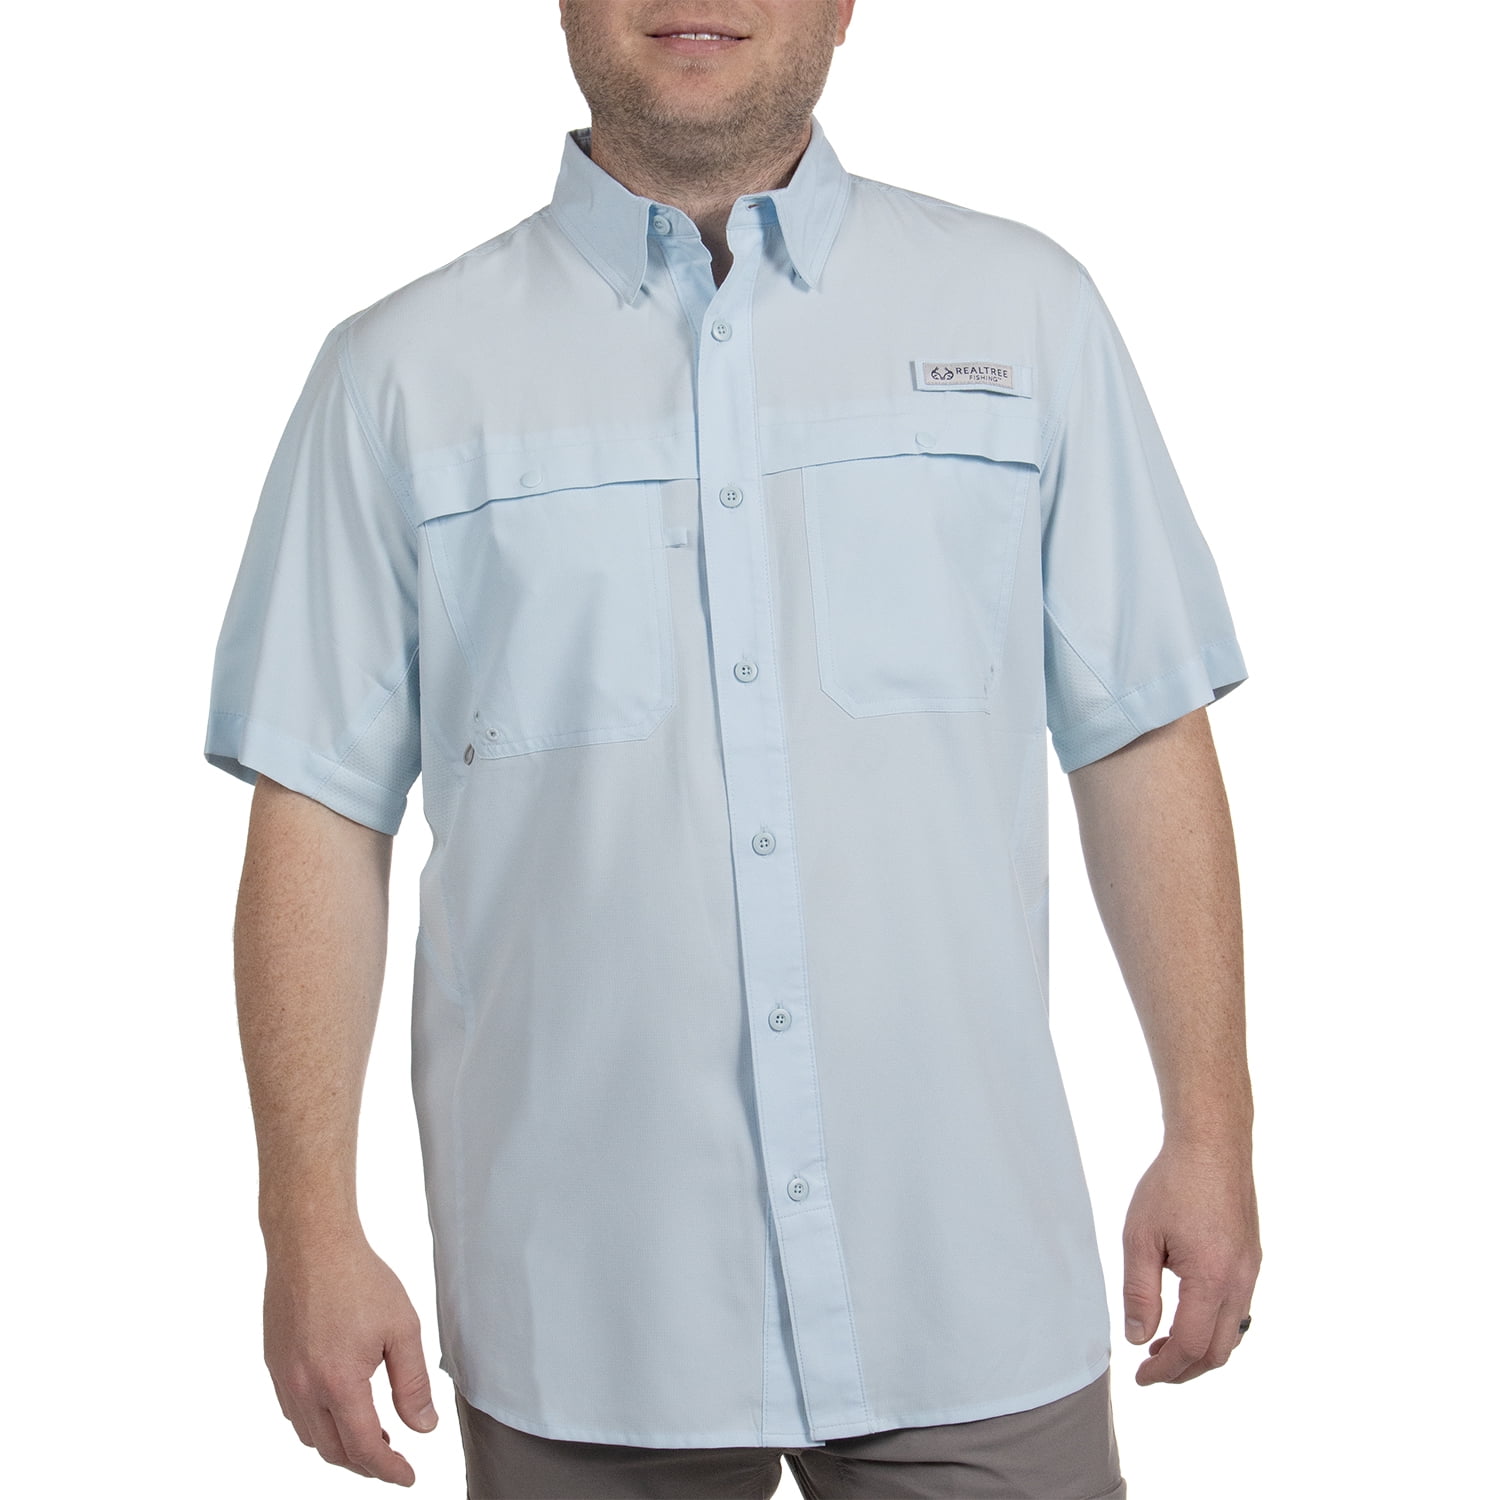 Realtree Short Sleeve Fishing Guide Shirt, Gargoyle, Size 3X-Large